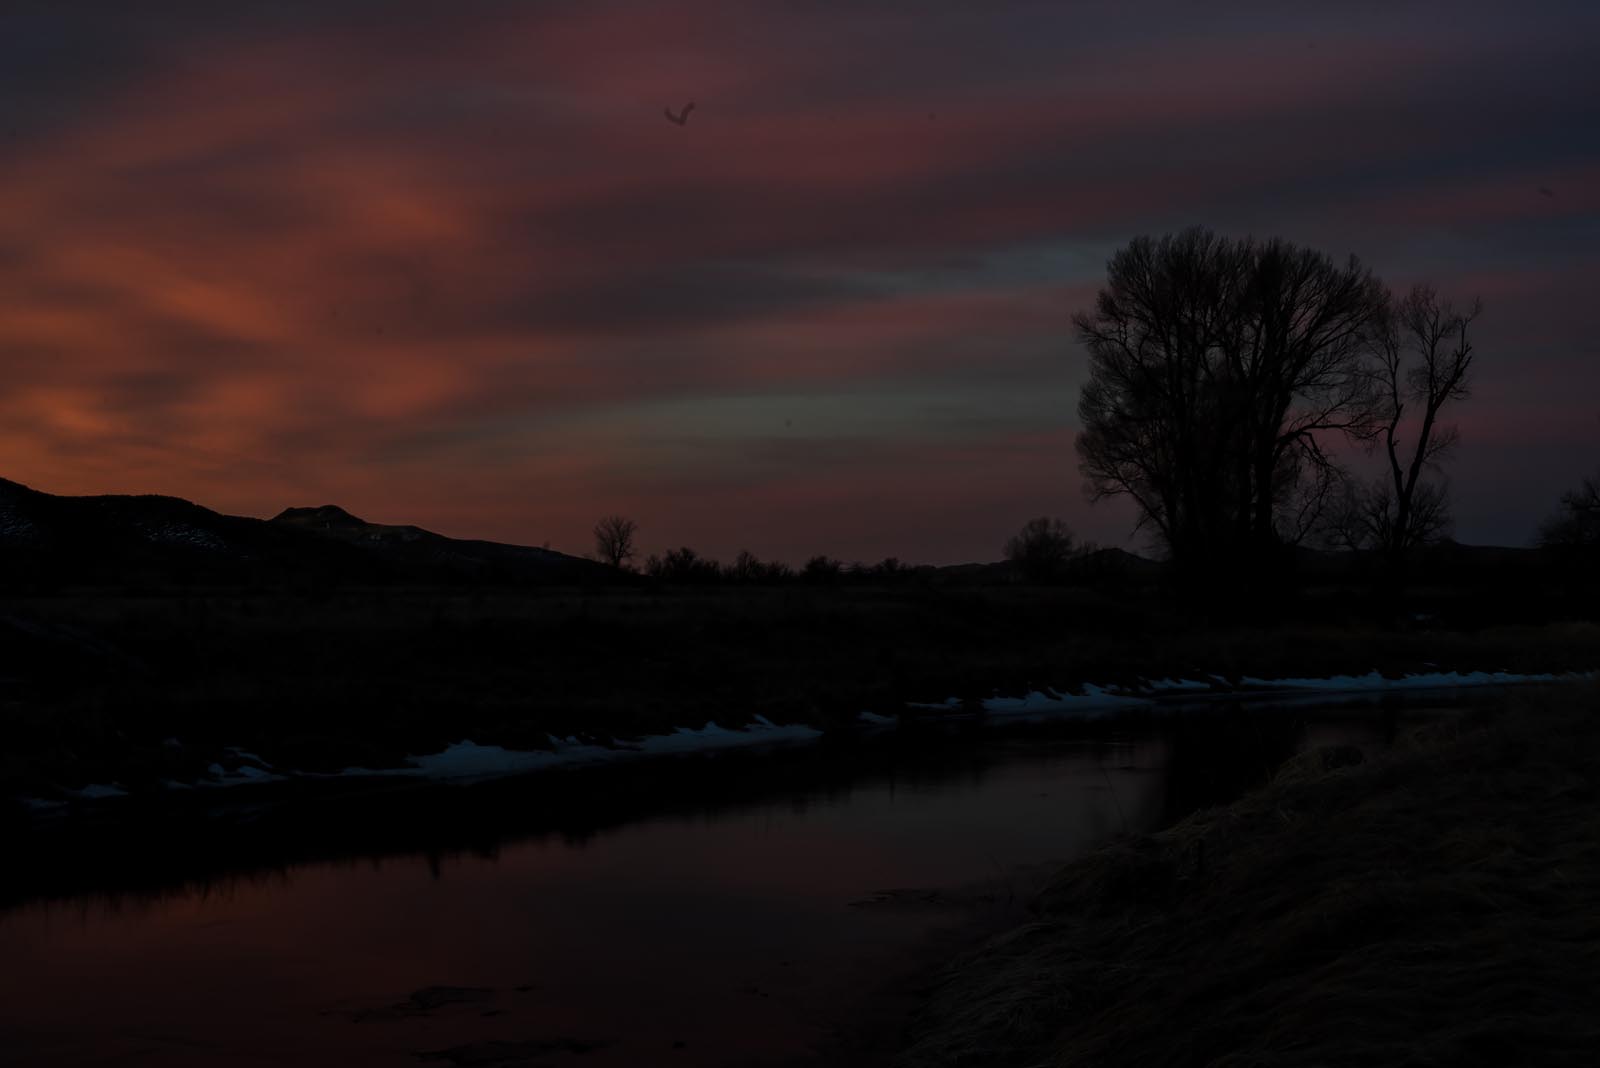 Lyrical Night Landscape Photographs: Wyoming Sky